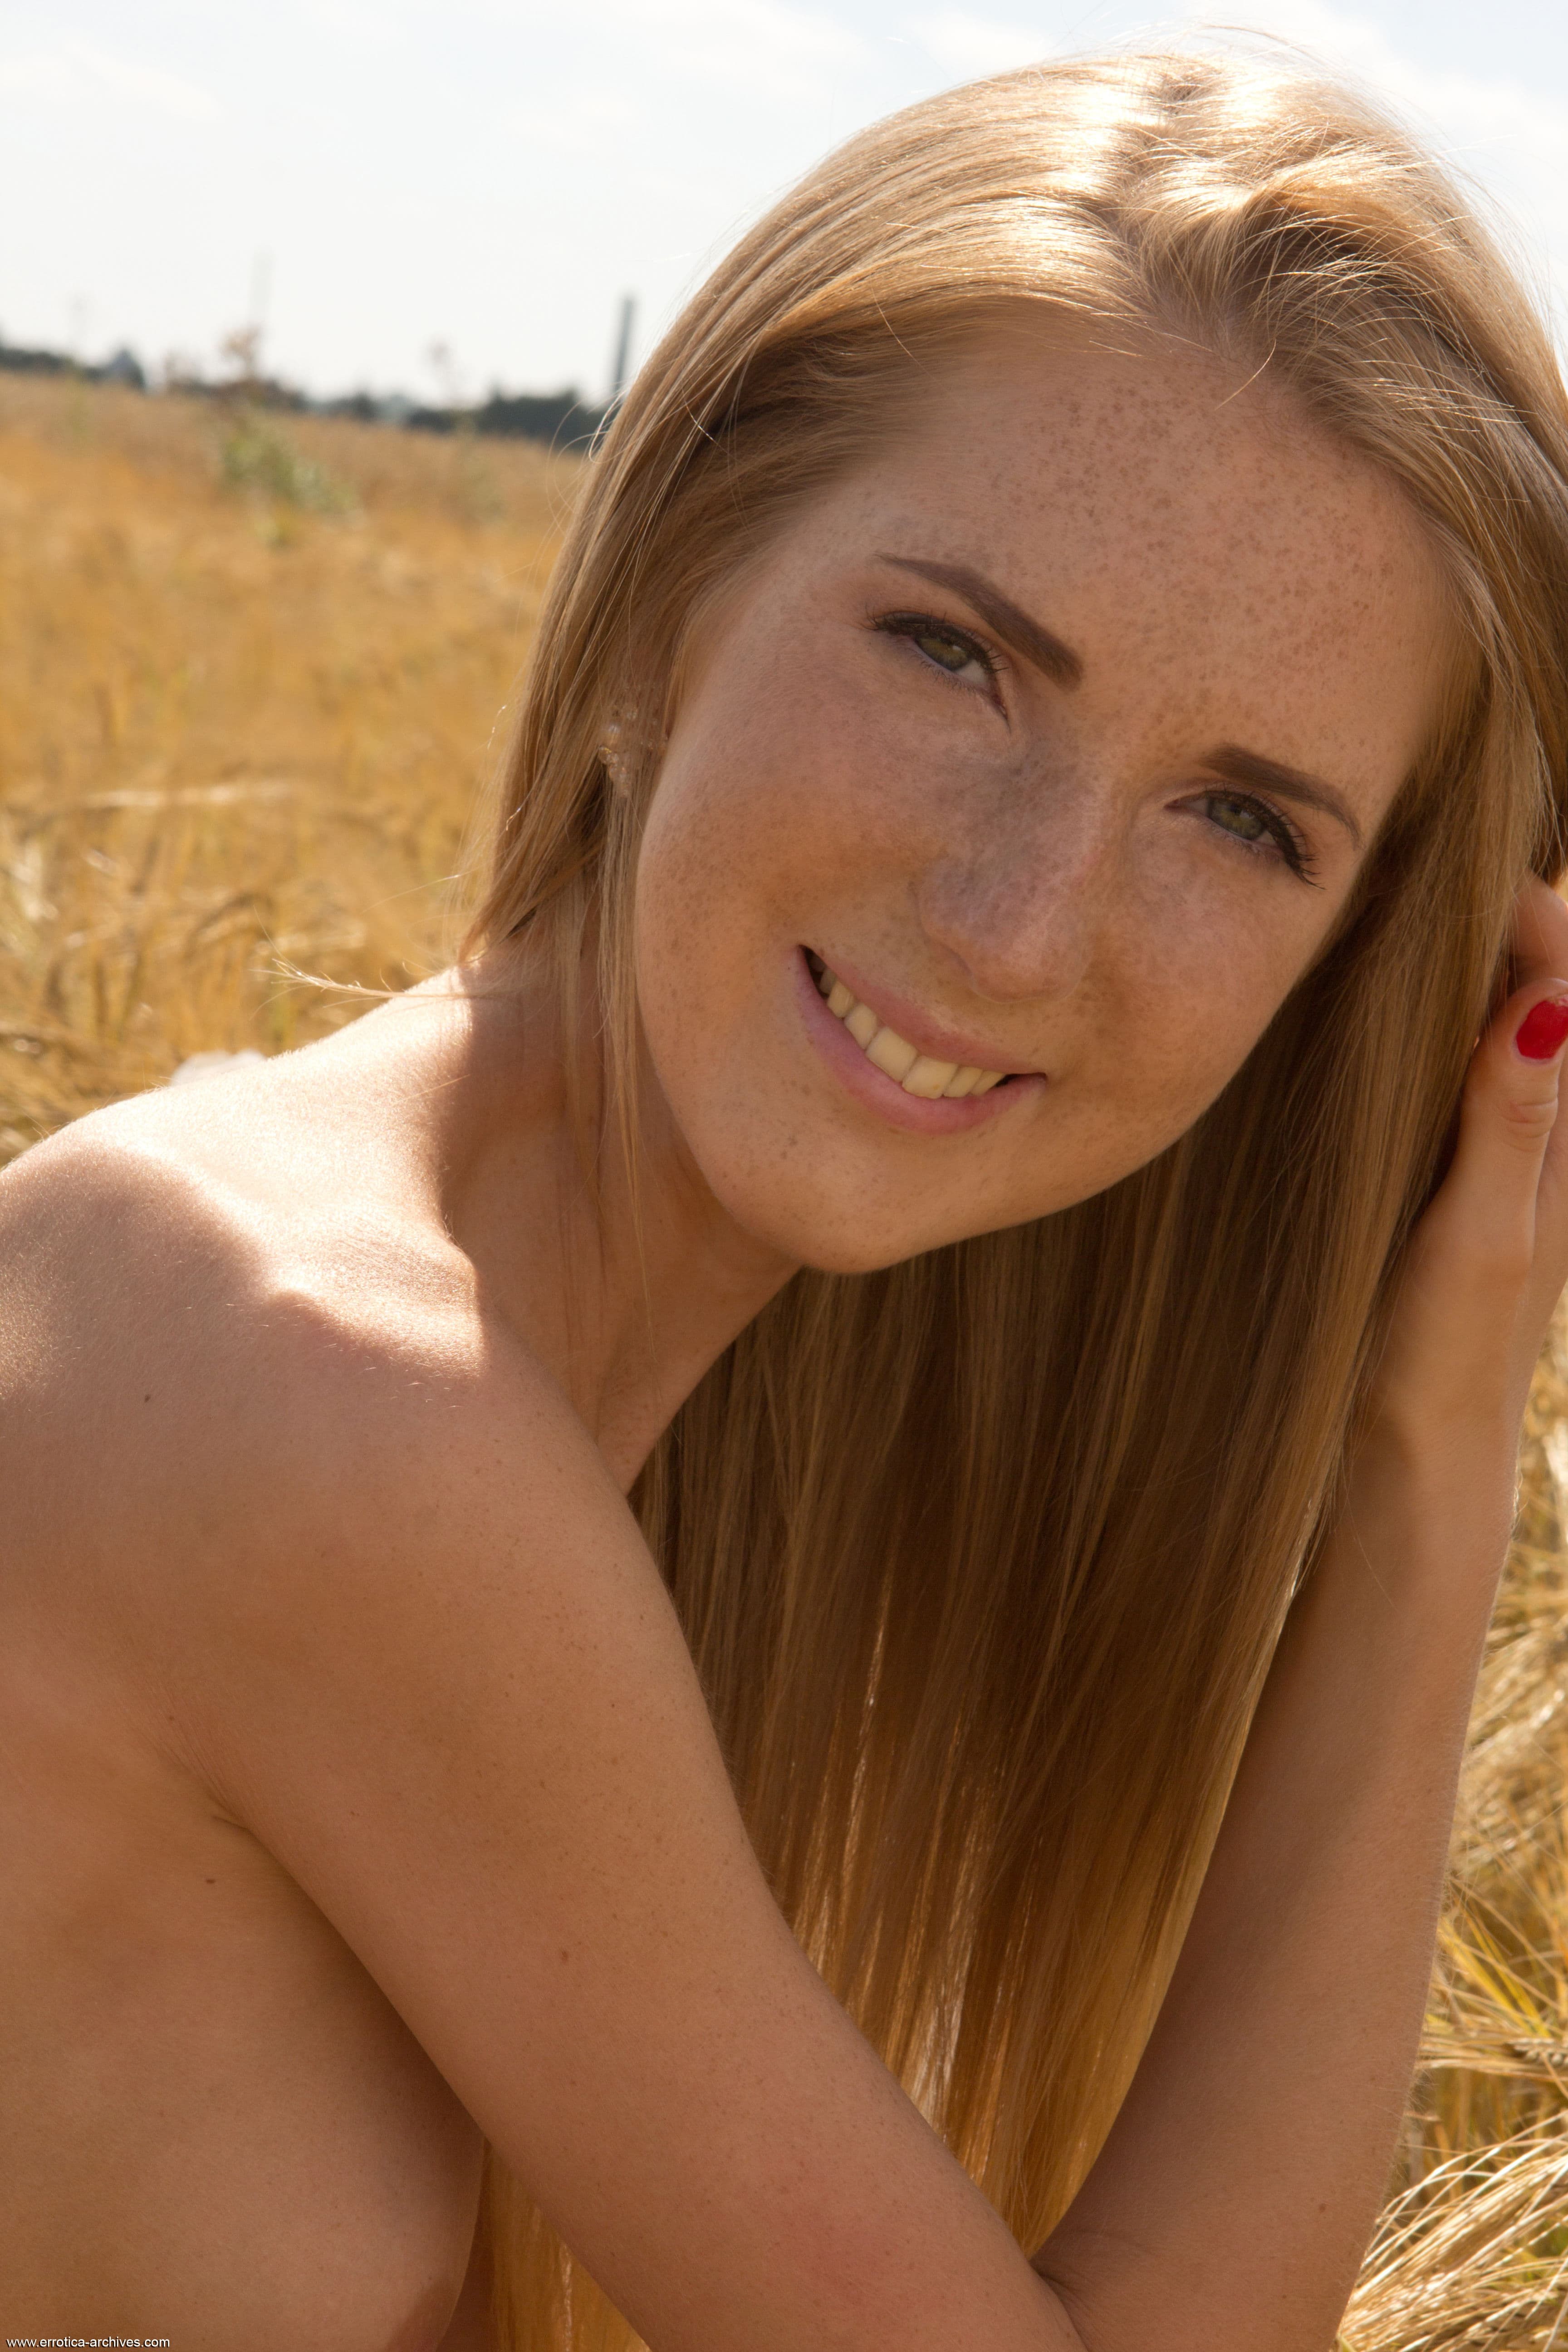 Тощая рыжая девушка голая в поле - фото